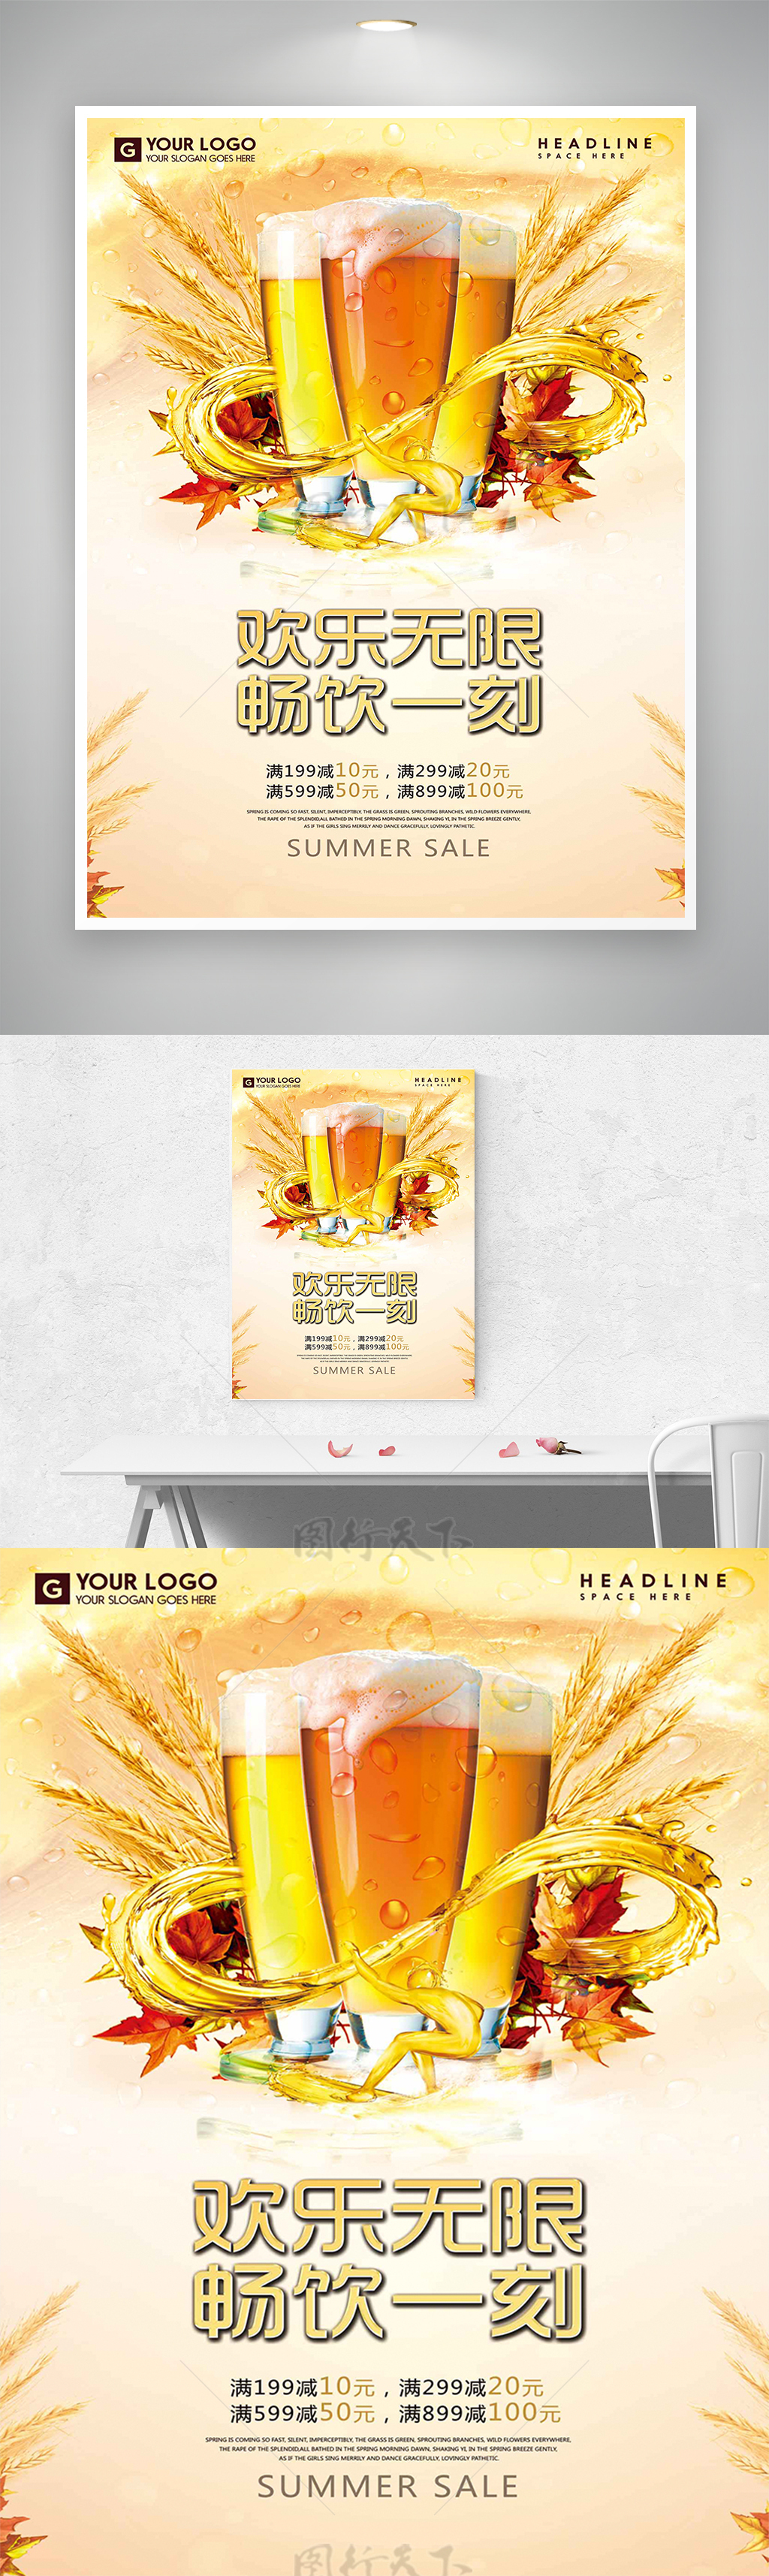 畅饮啤酒节节日促销宣传海报